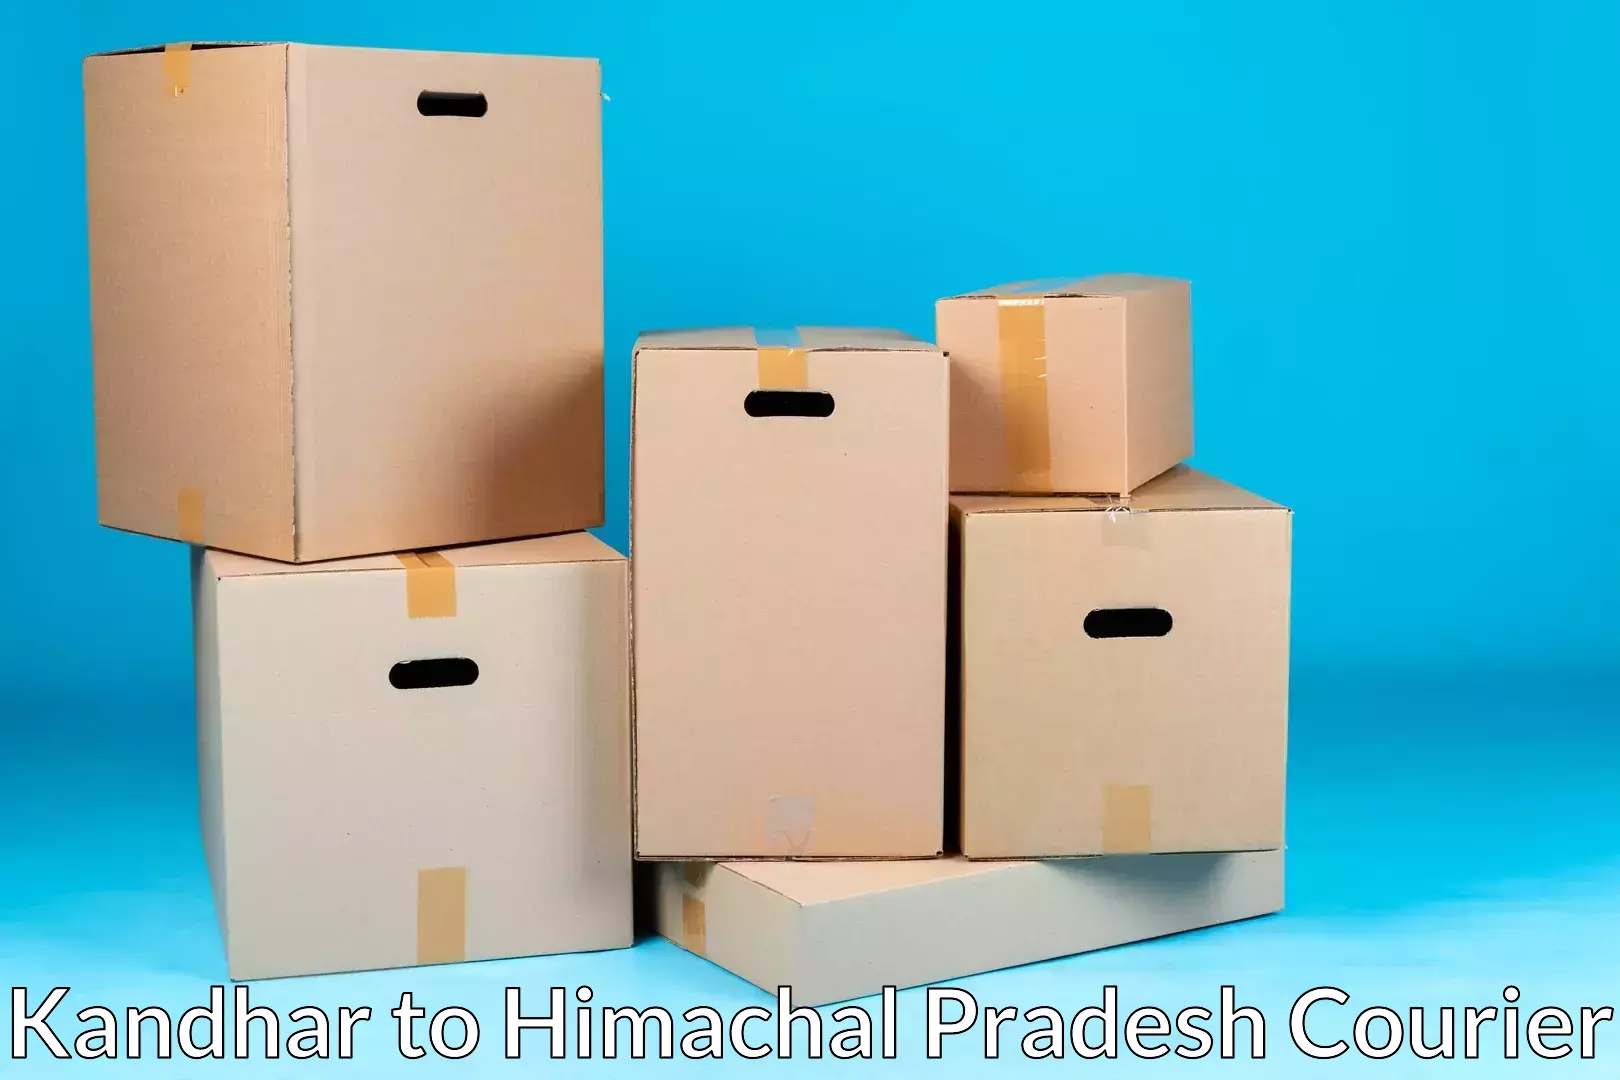 Furniture transport company Kandhar to Himachal Pradesh